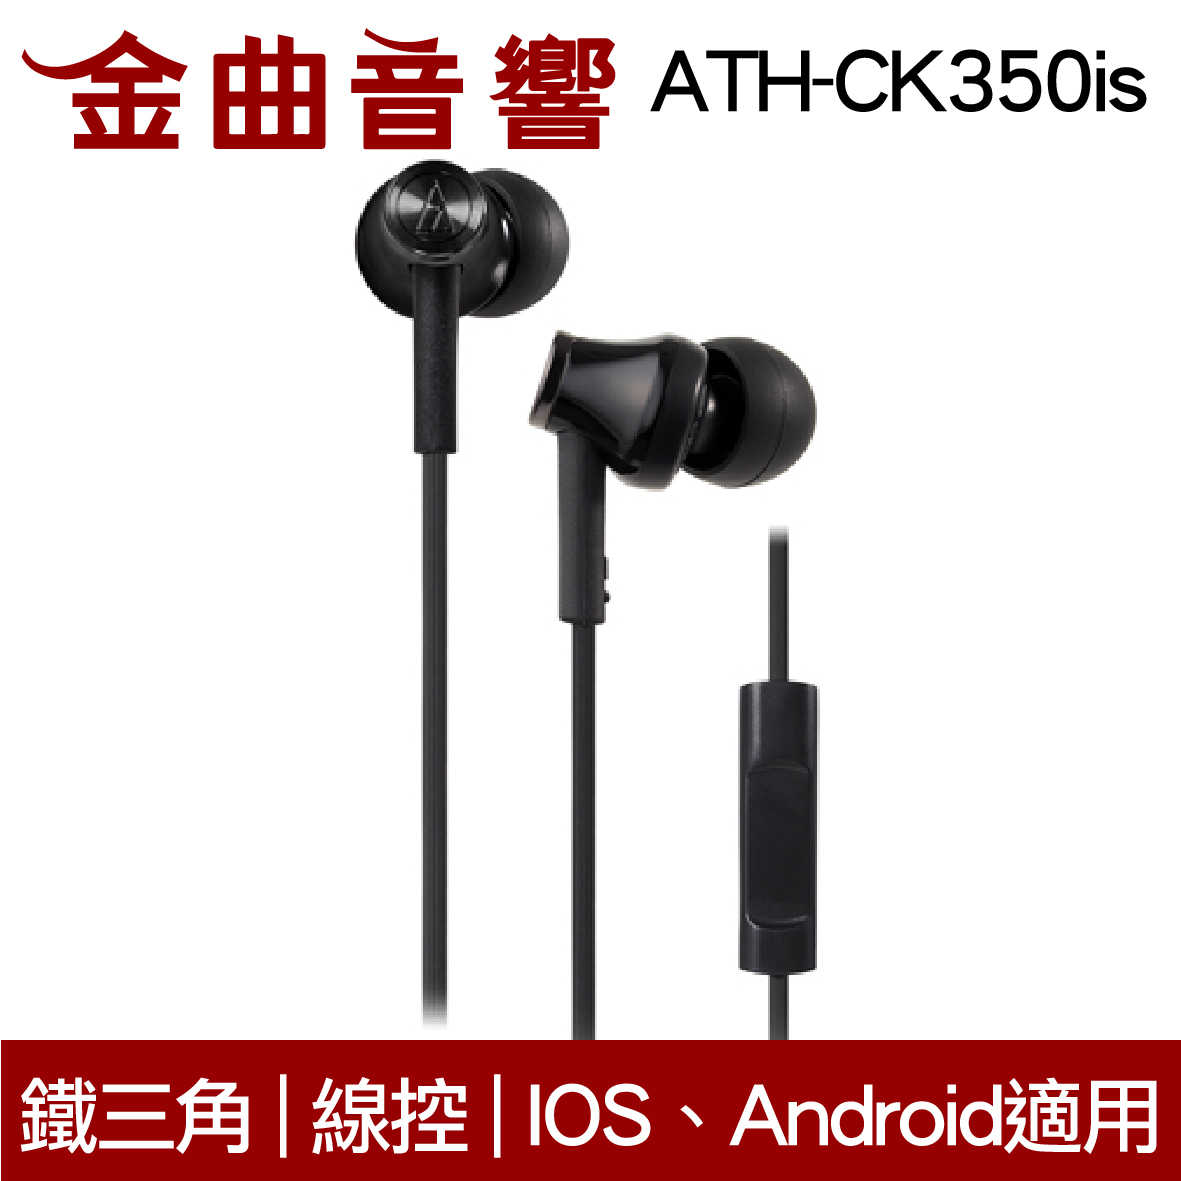 鐵三角 ATH-CK350iS 多色可選 線控耳道式耳機 IPhone IOS安卓適用 | 金曲音響